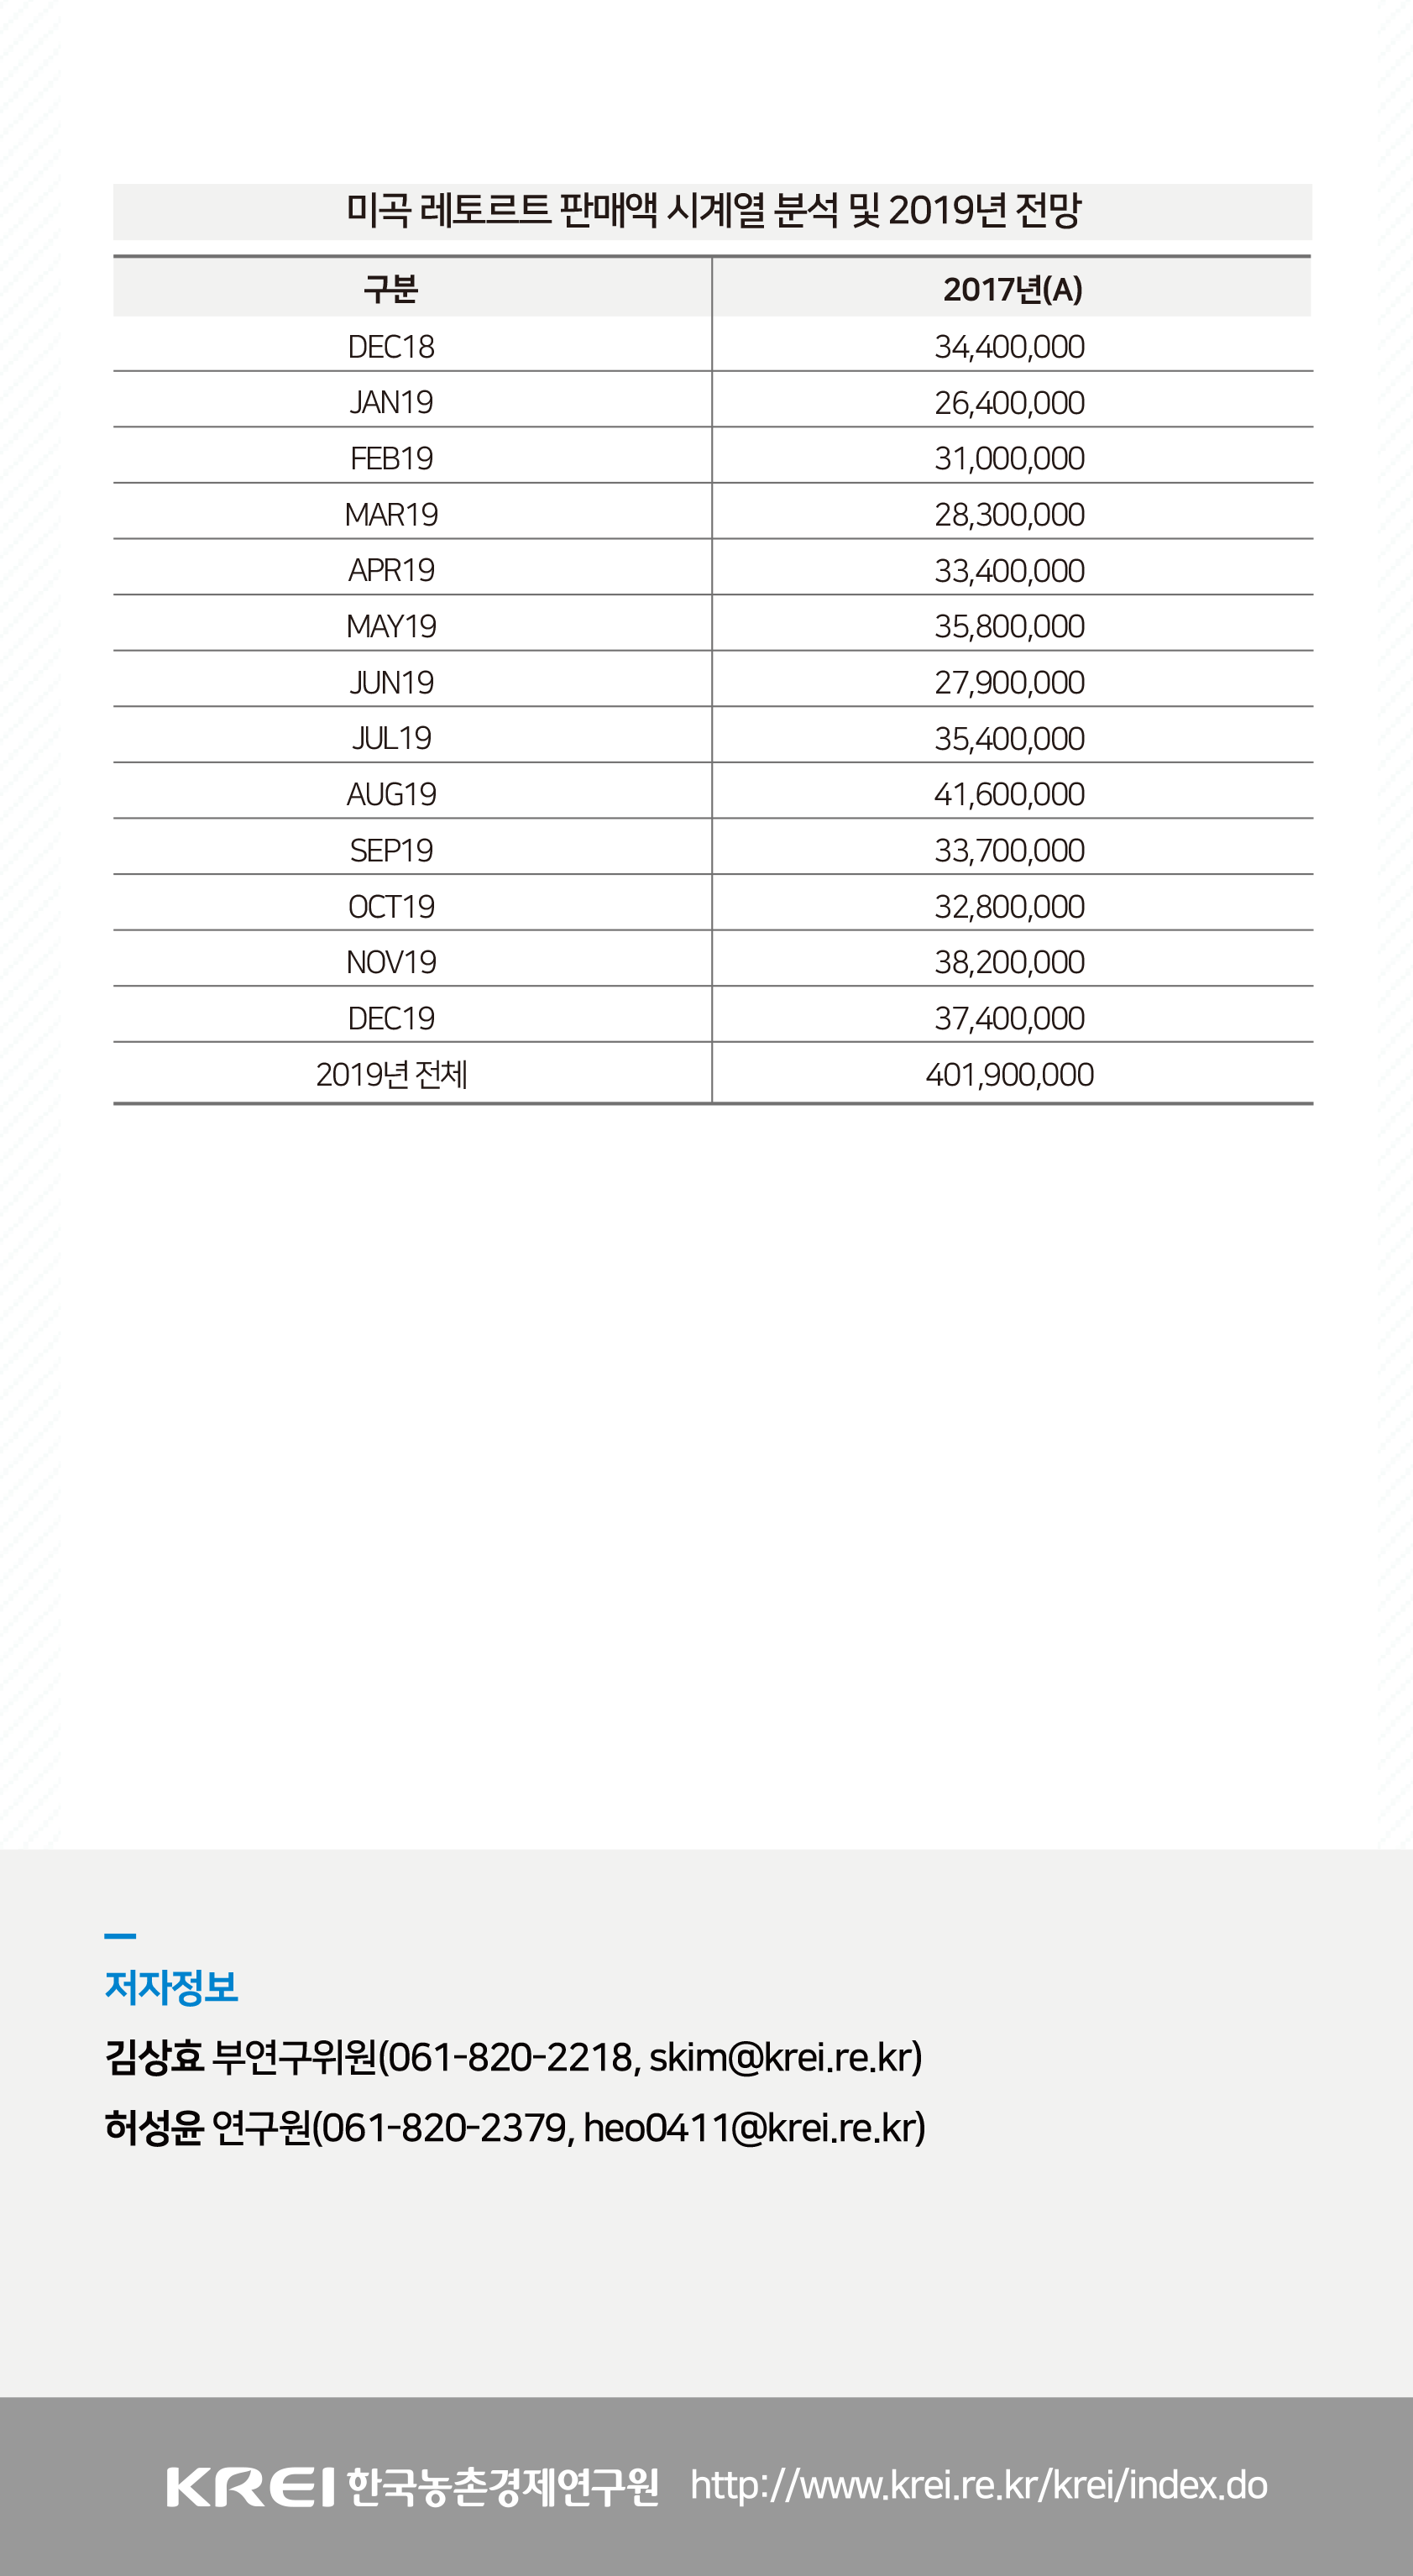 미곡 레토르트 판매액 시계열 분석 및 2019년 전망